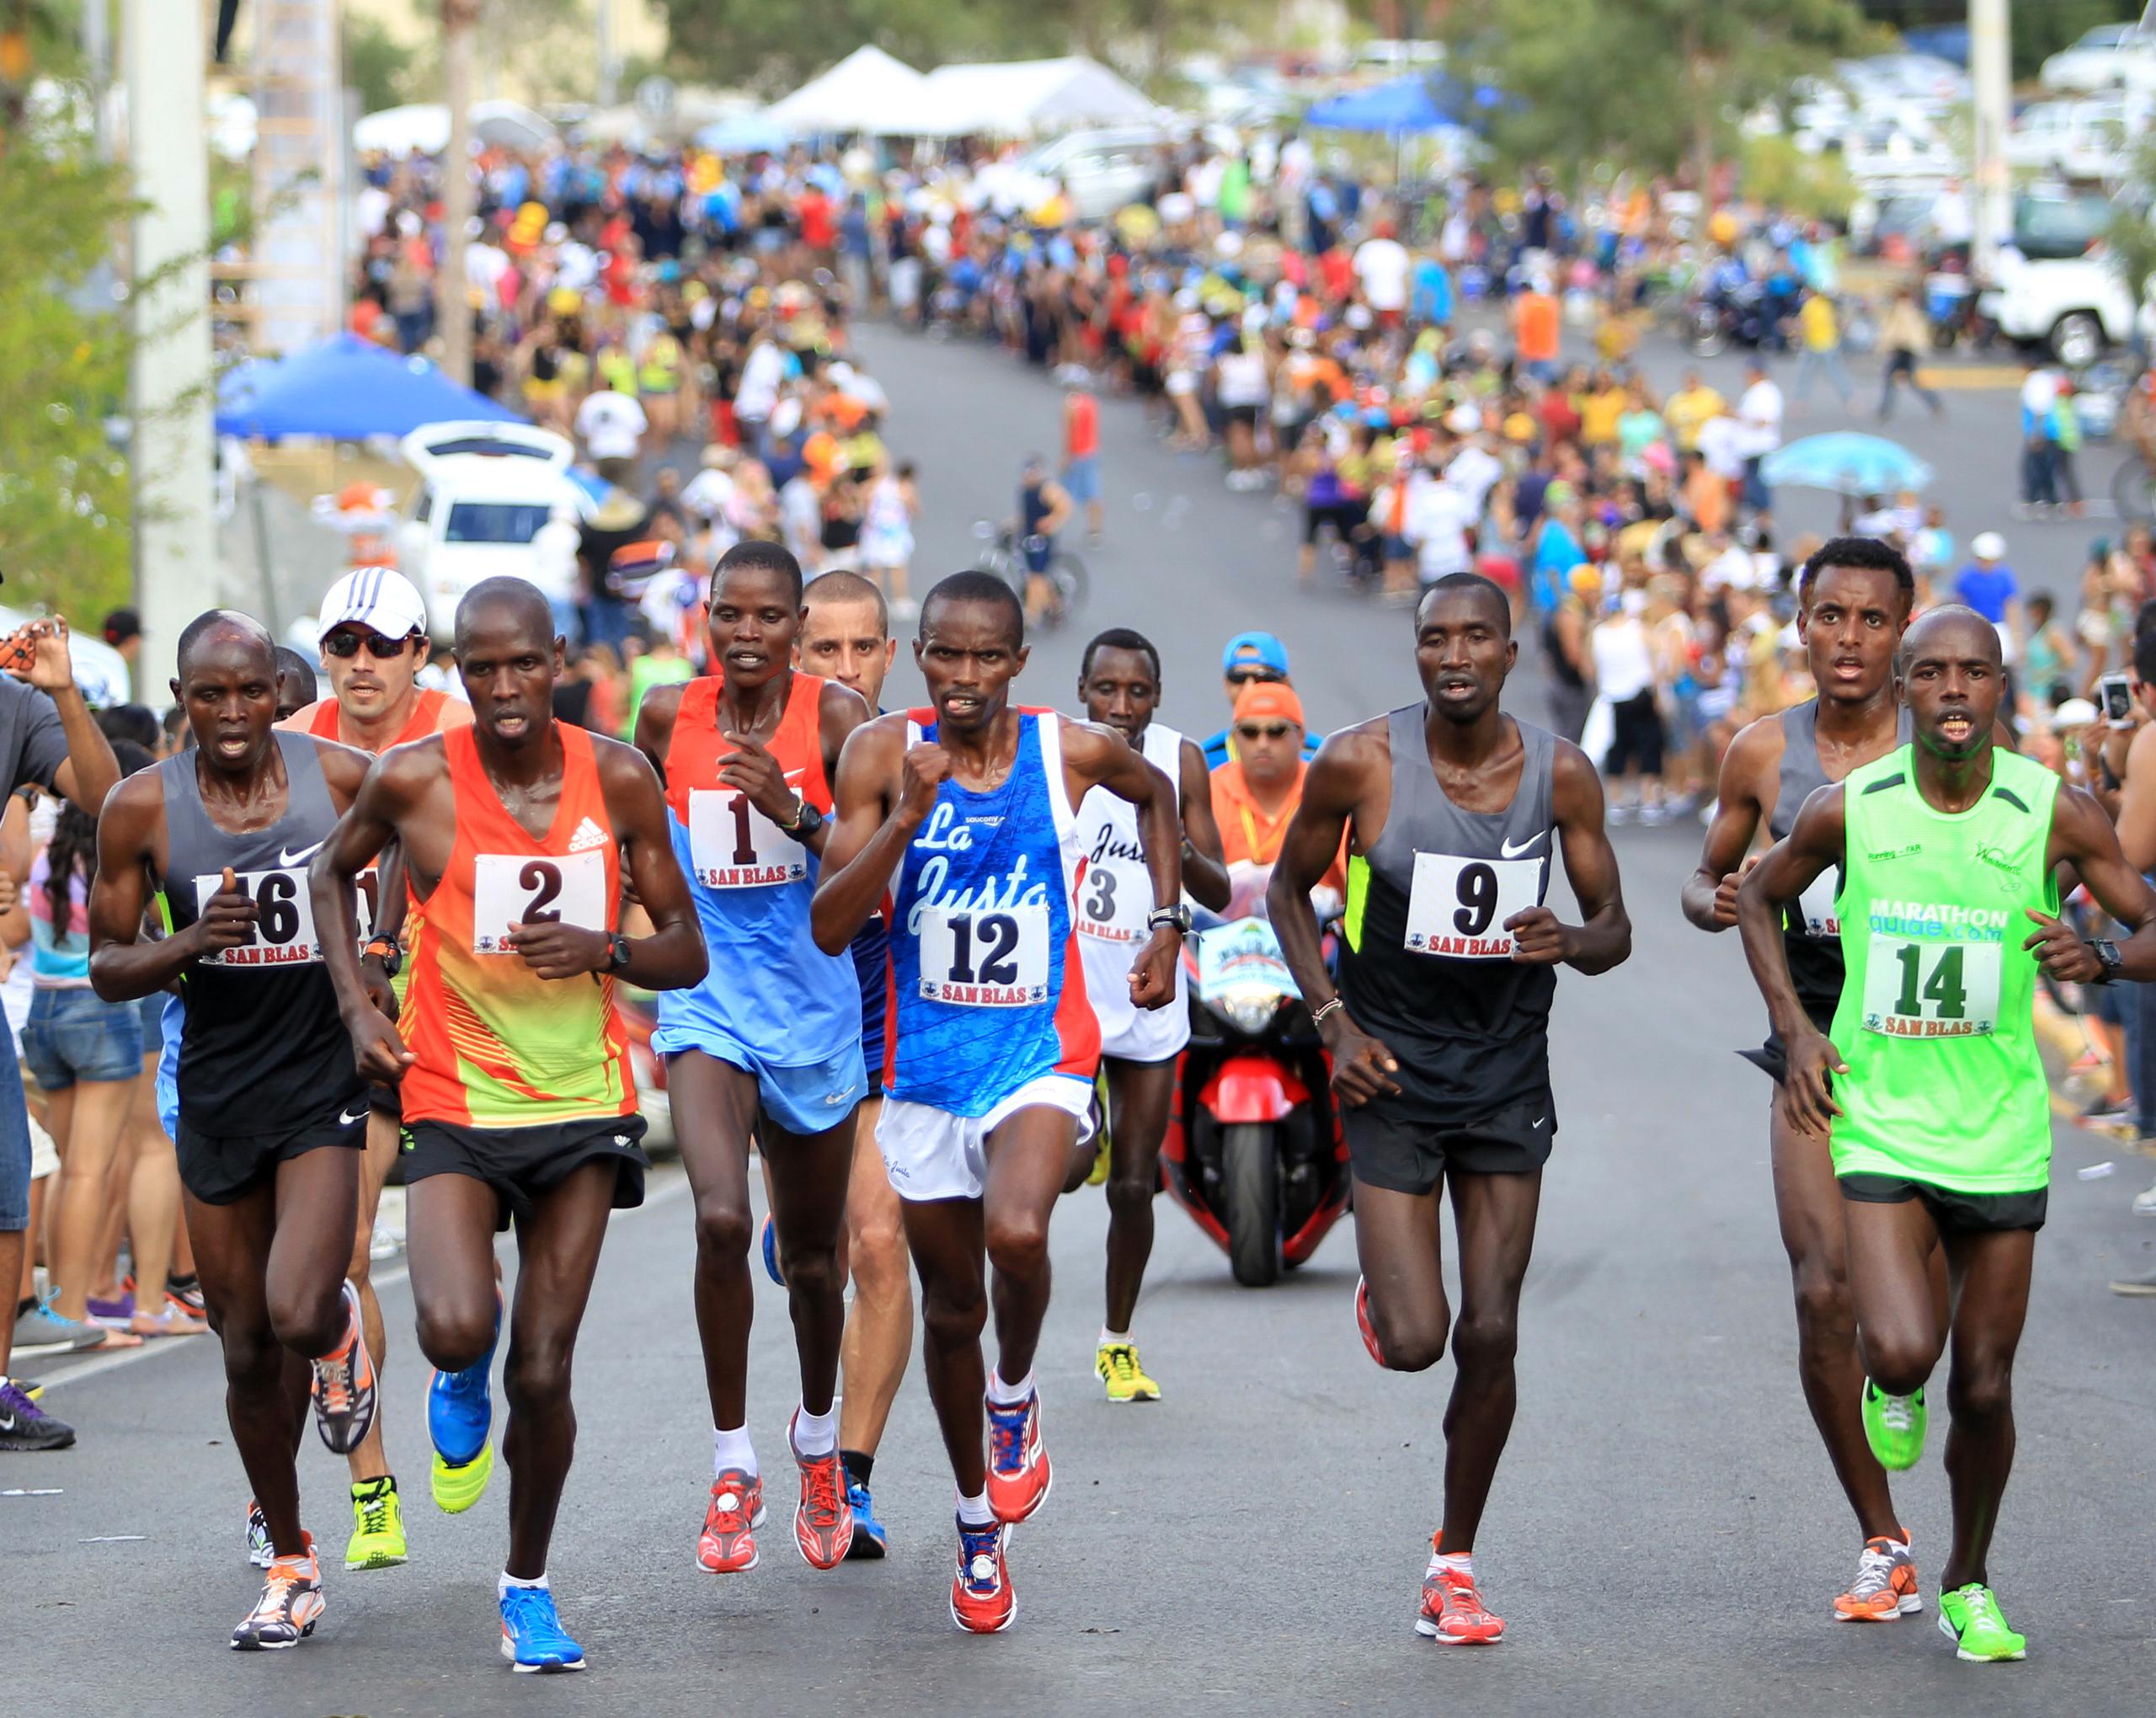 Imagen típica del Medio Maratón San Blas, con sus corredores internacionales y público apoyando a los corredores.